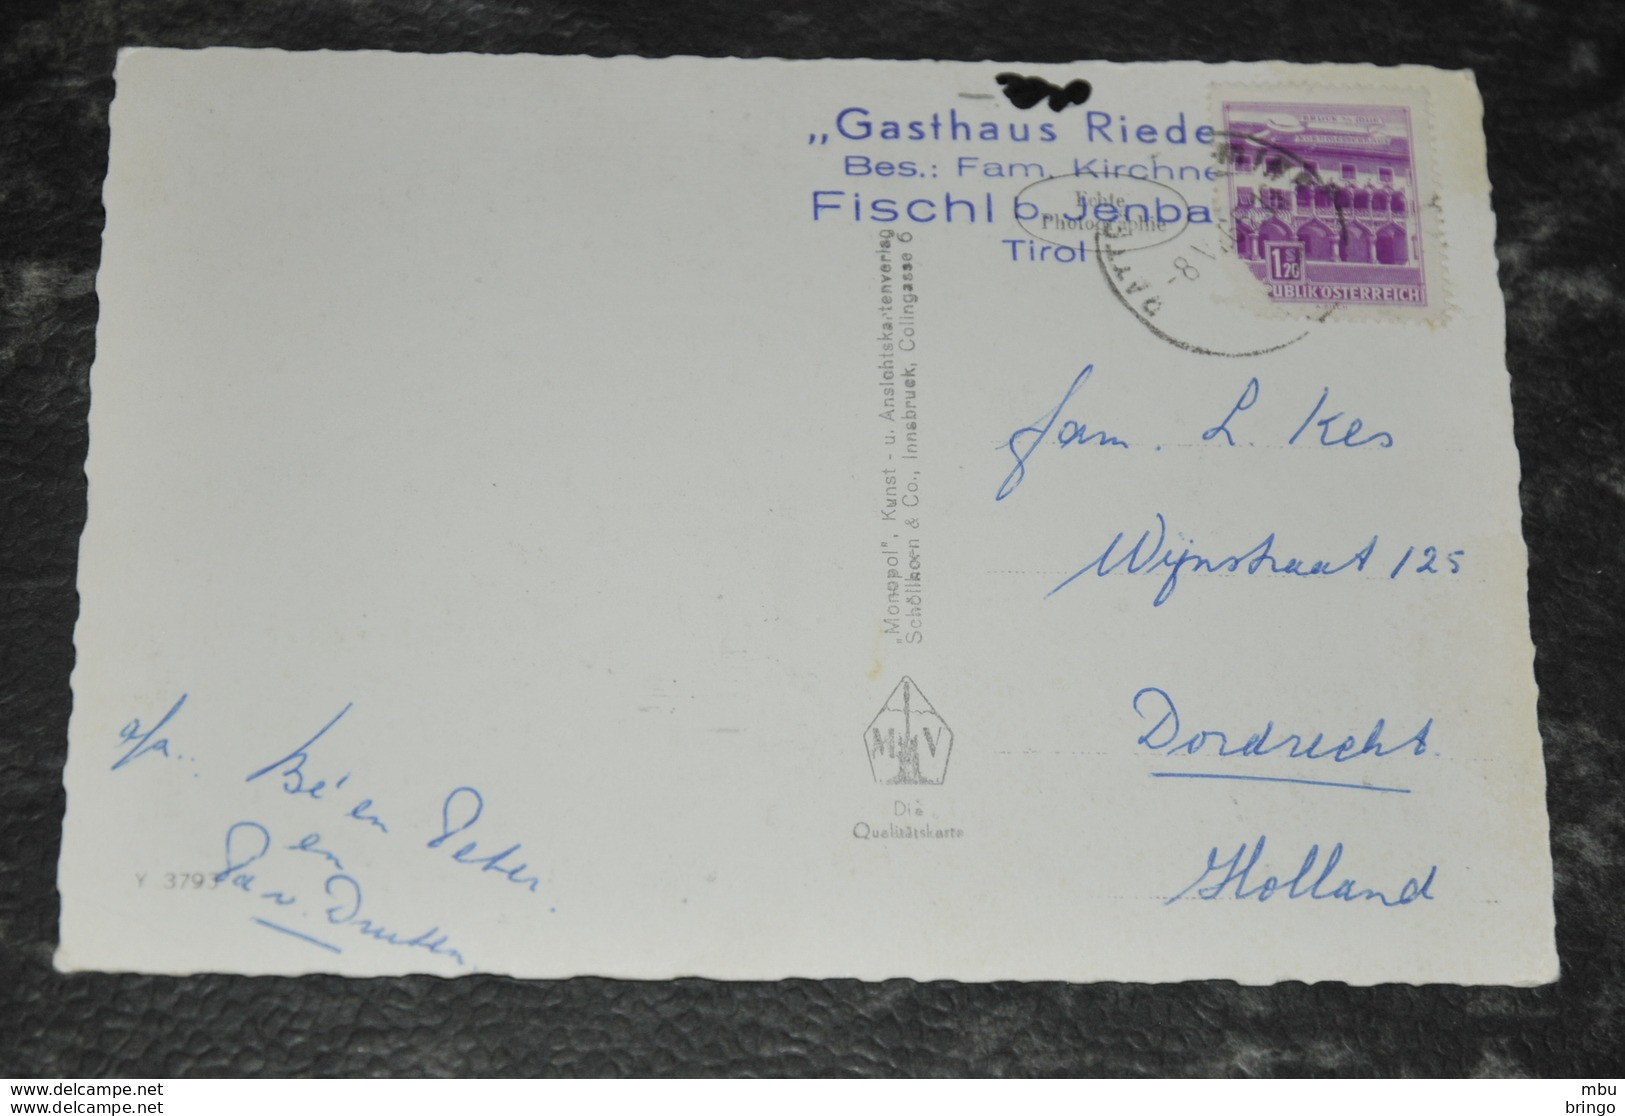 A496   Fischl Bei Jenbach   Gasthaus Rieder  1965 - Jenbach